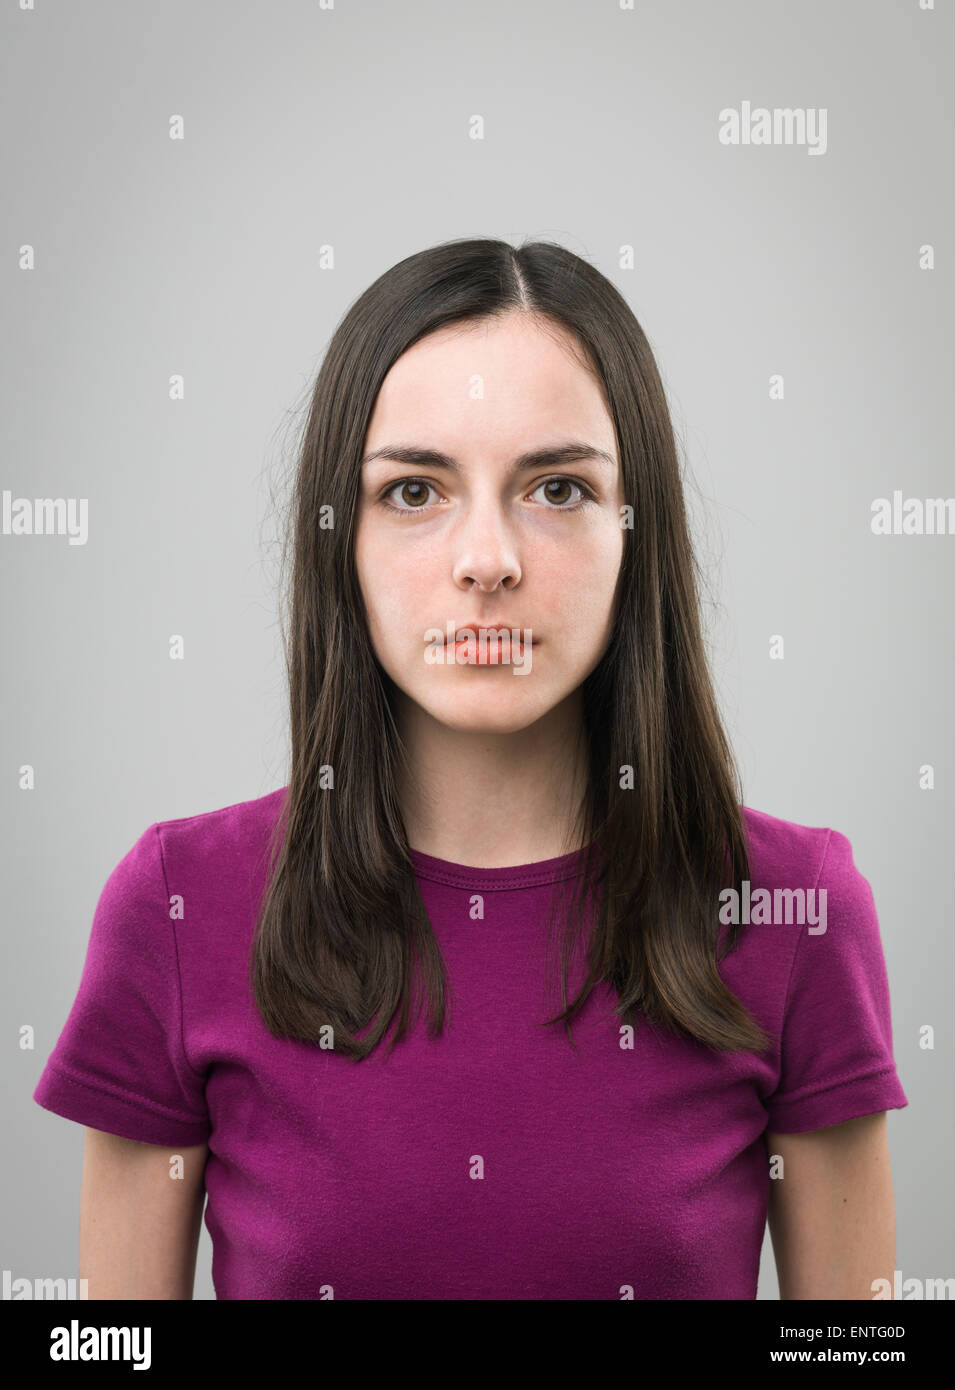 Porträt der jungen Frau mit leeren Gesichtsausdruck auf grauem Hintergrund Stockfoto